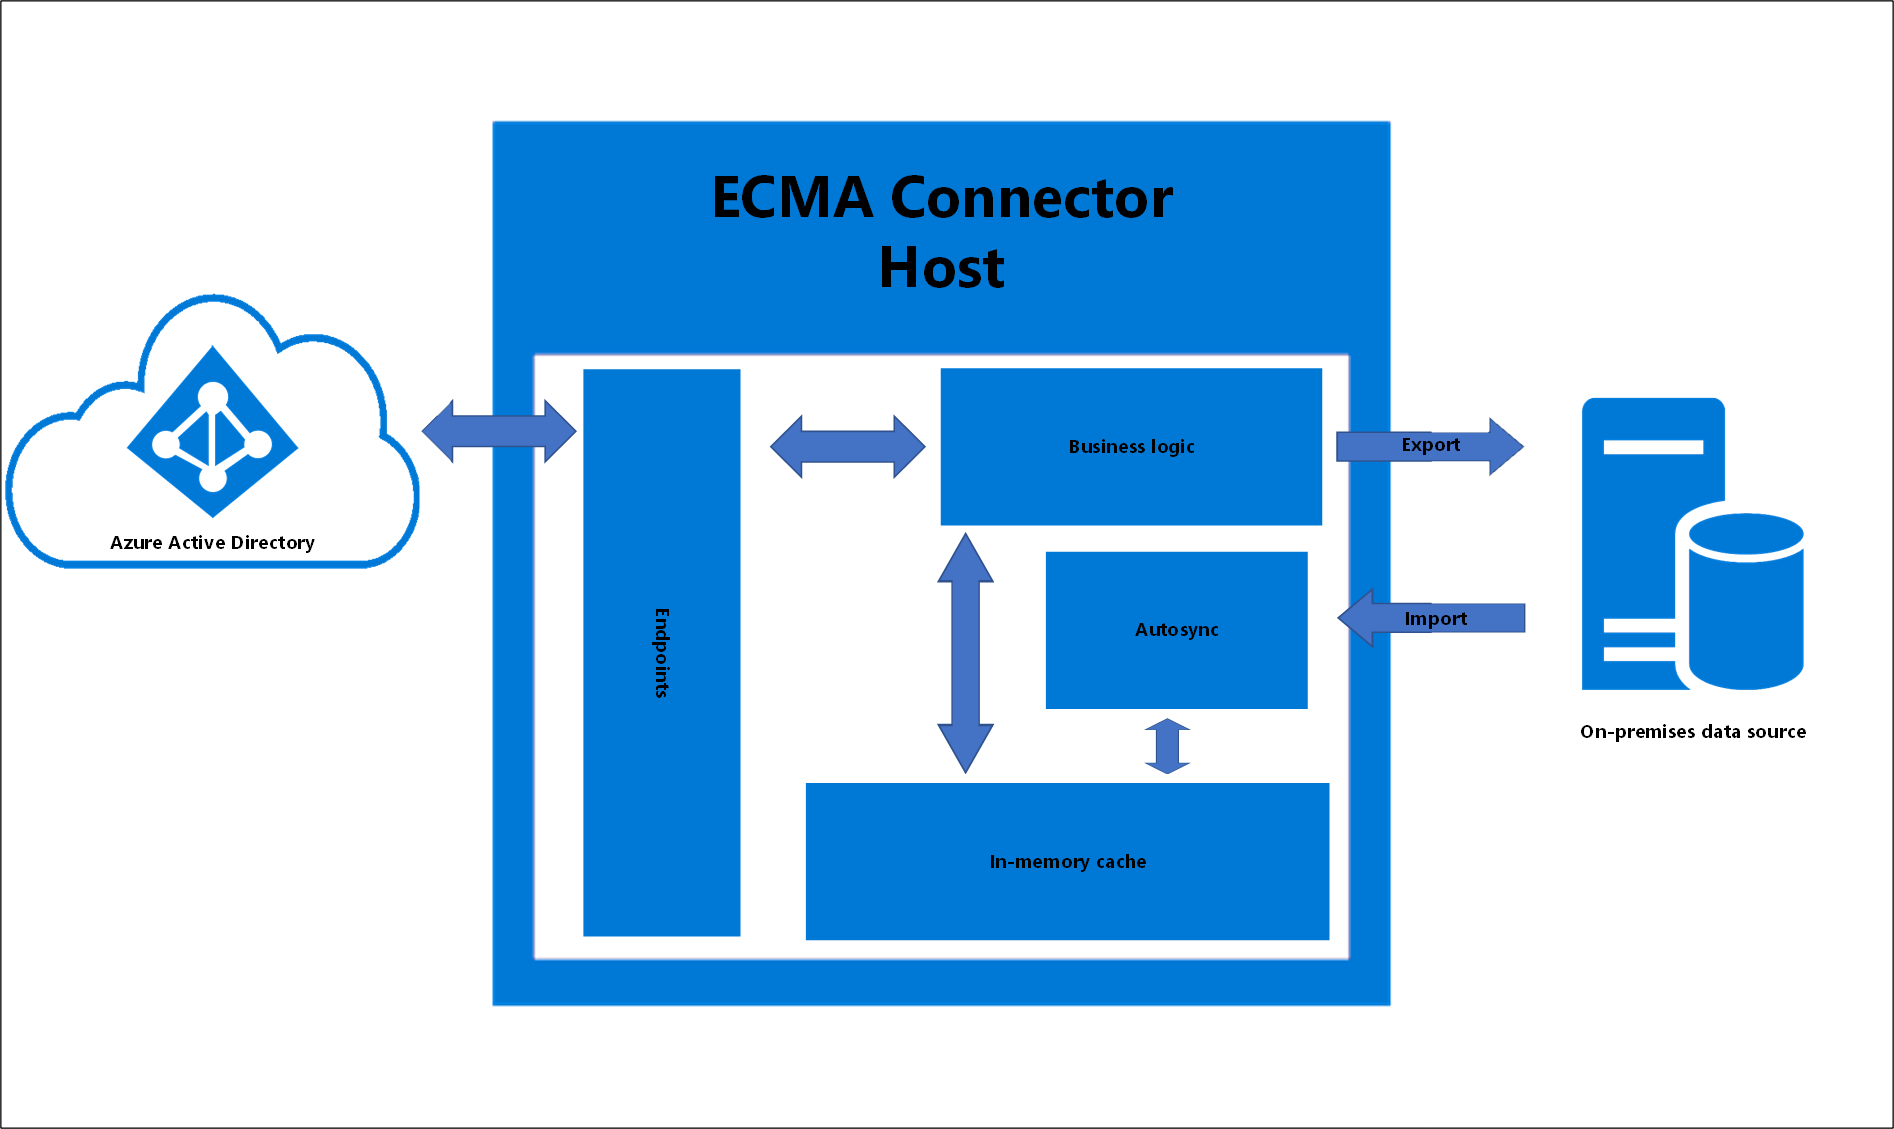 Host do conector ECMA